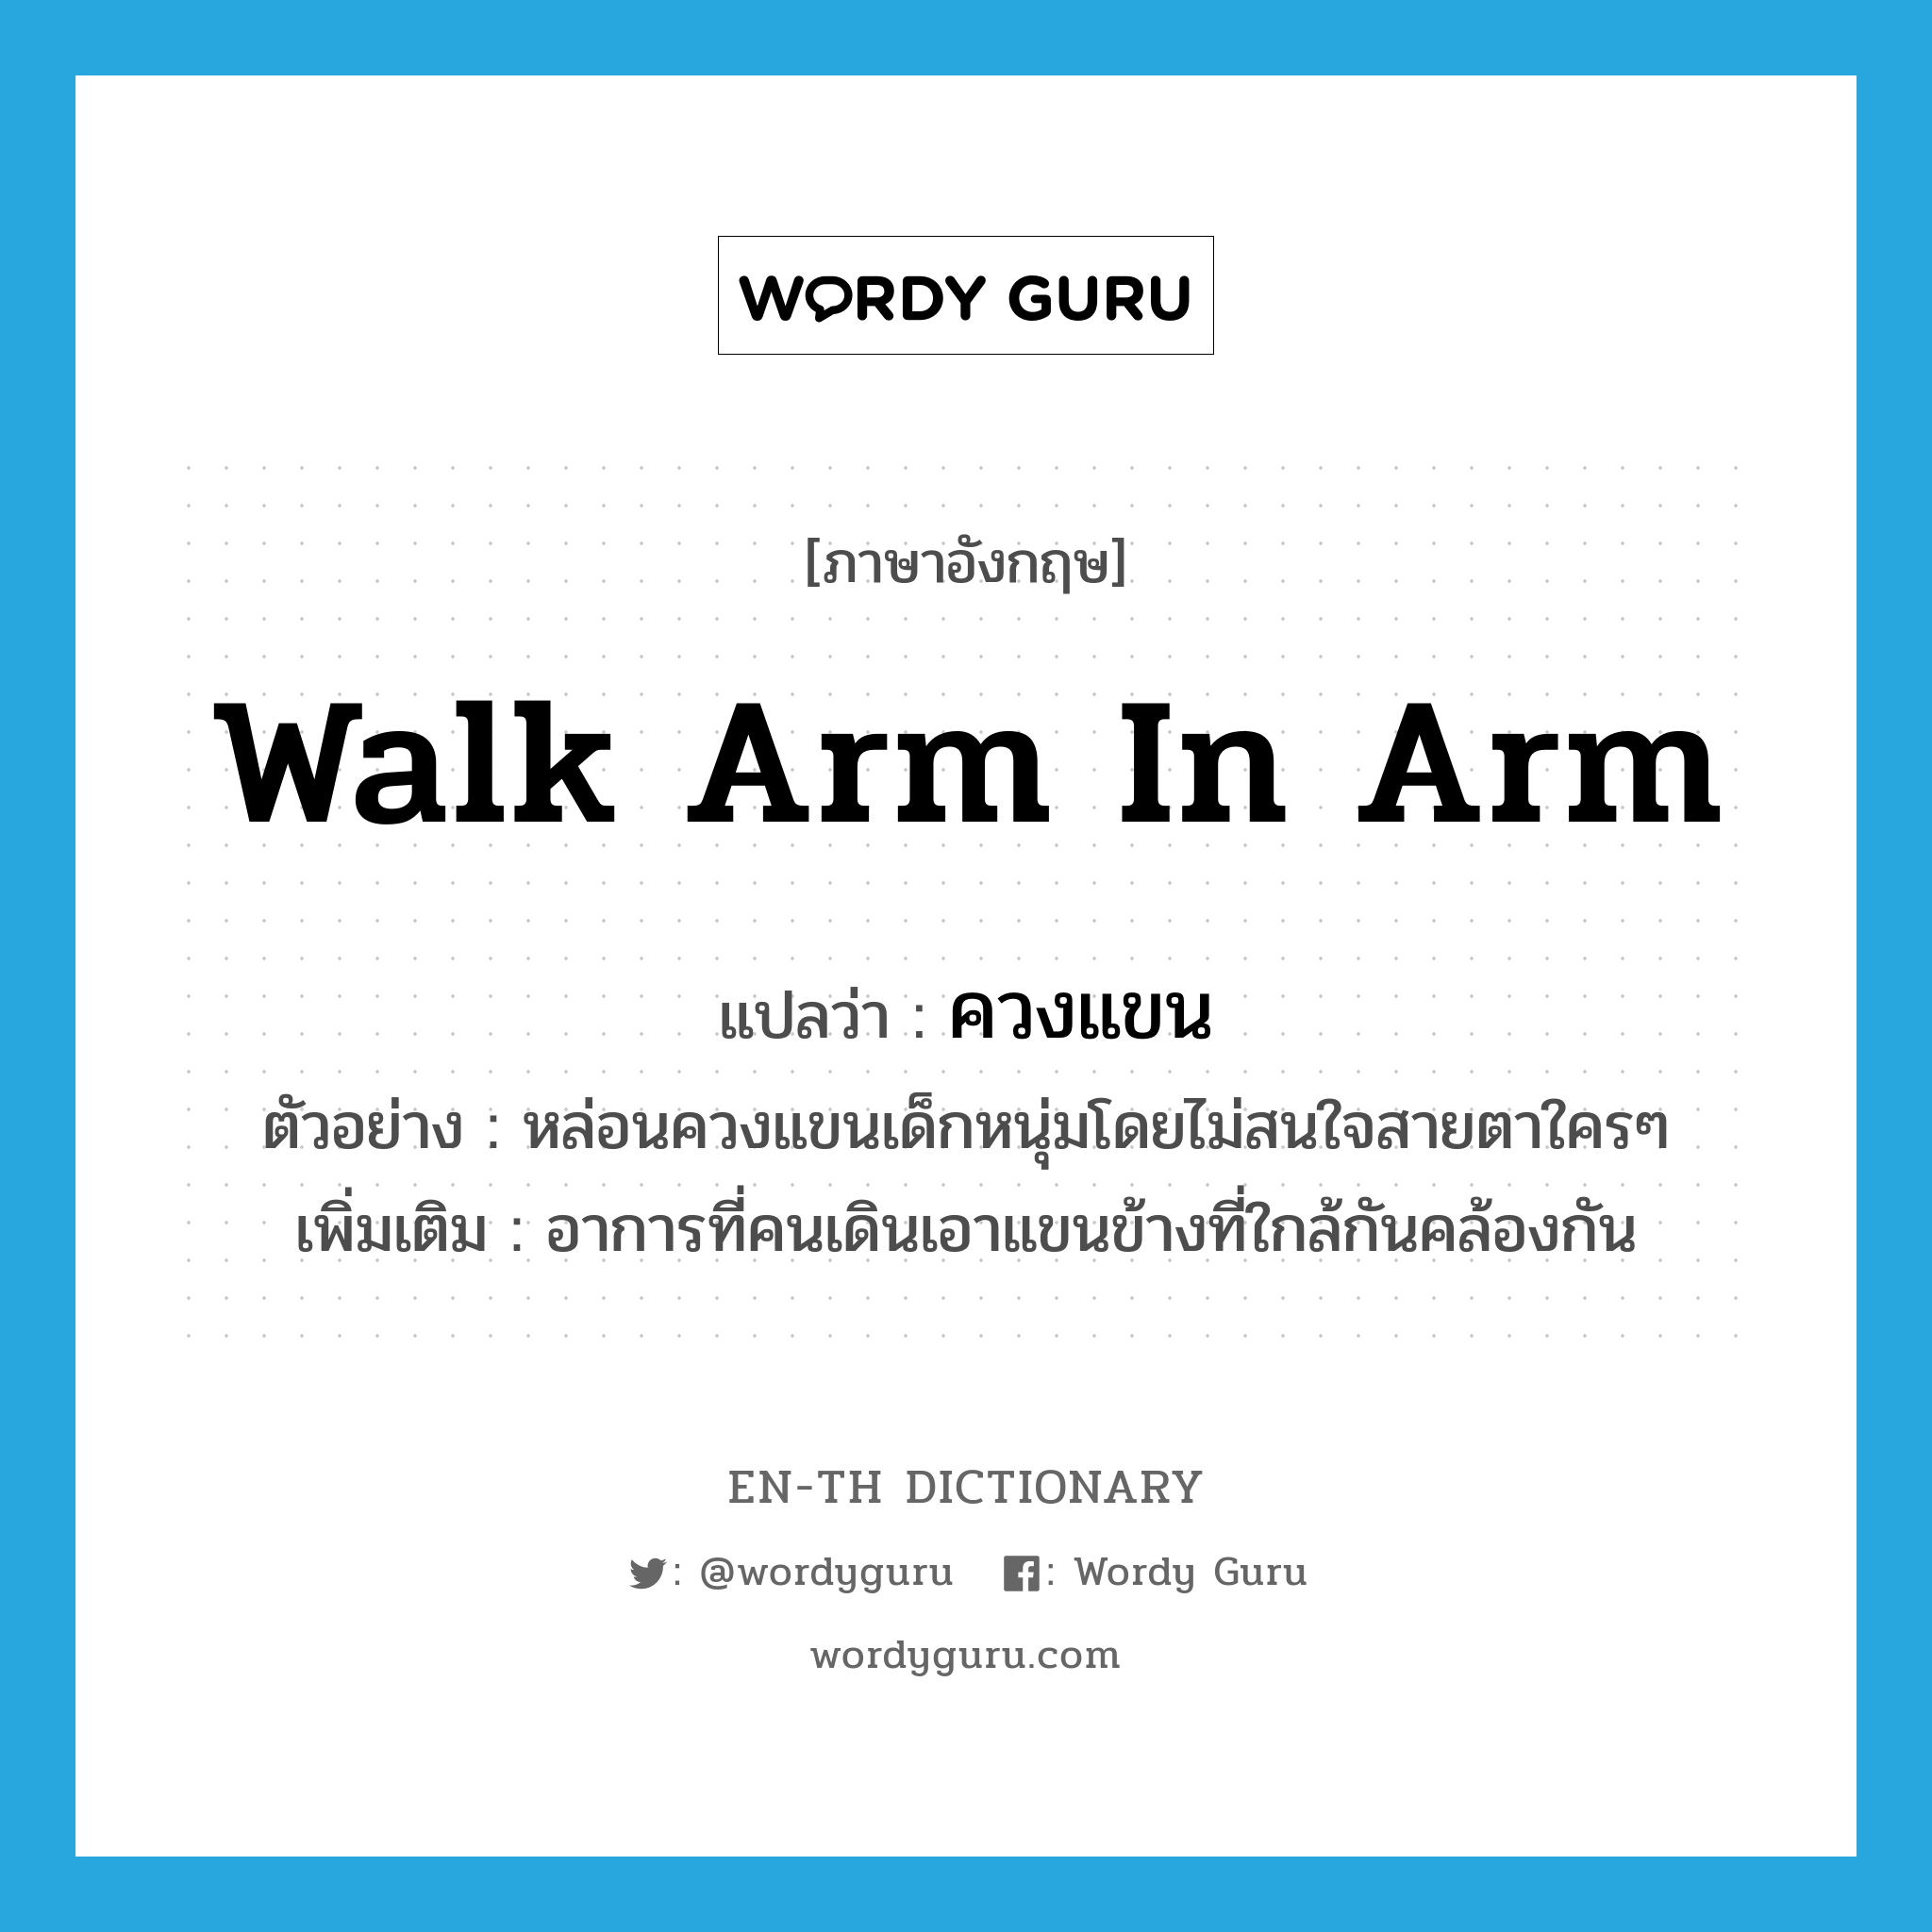 walk arm in arm แปลว่า?, คำศัพท์ภาษาอังกฤษ walk arm in arm แปลว่า ควงแขน ประเภท V ตัวอย่าง หล่อนควงแขนเด็กหนุ่มโดยไม่สนใจสายตาใครๆ เพิ่มเติม อาการที่คนเดินเอาแขนข้างที่ใกล้กันคล้องกัน หมวด V